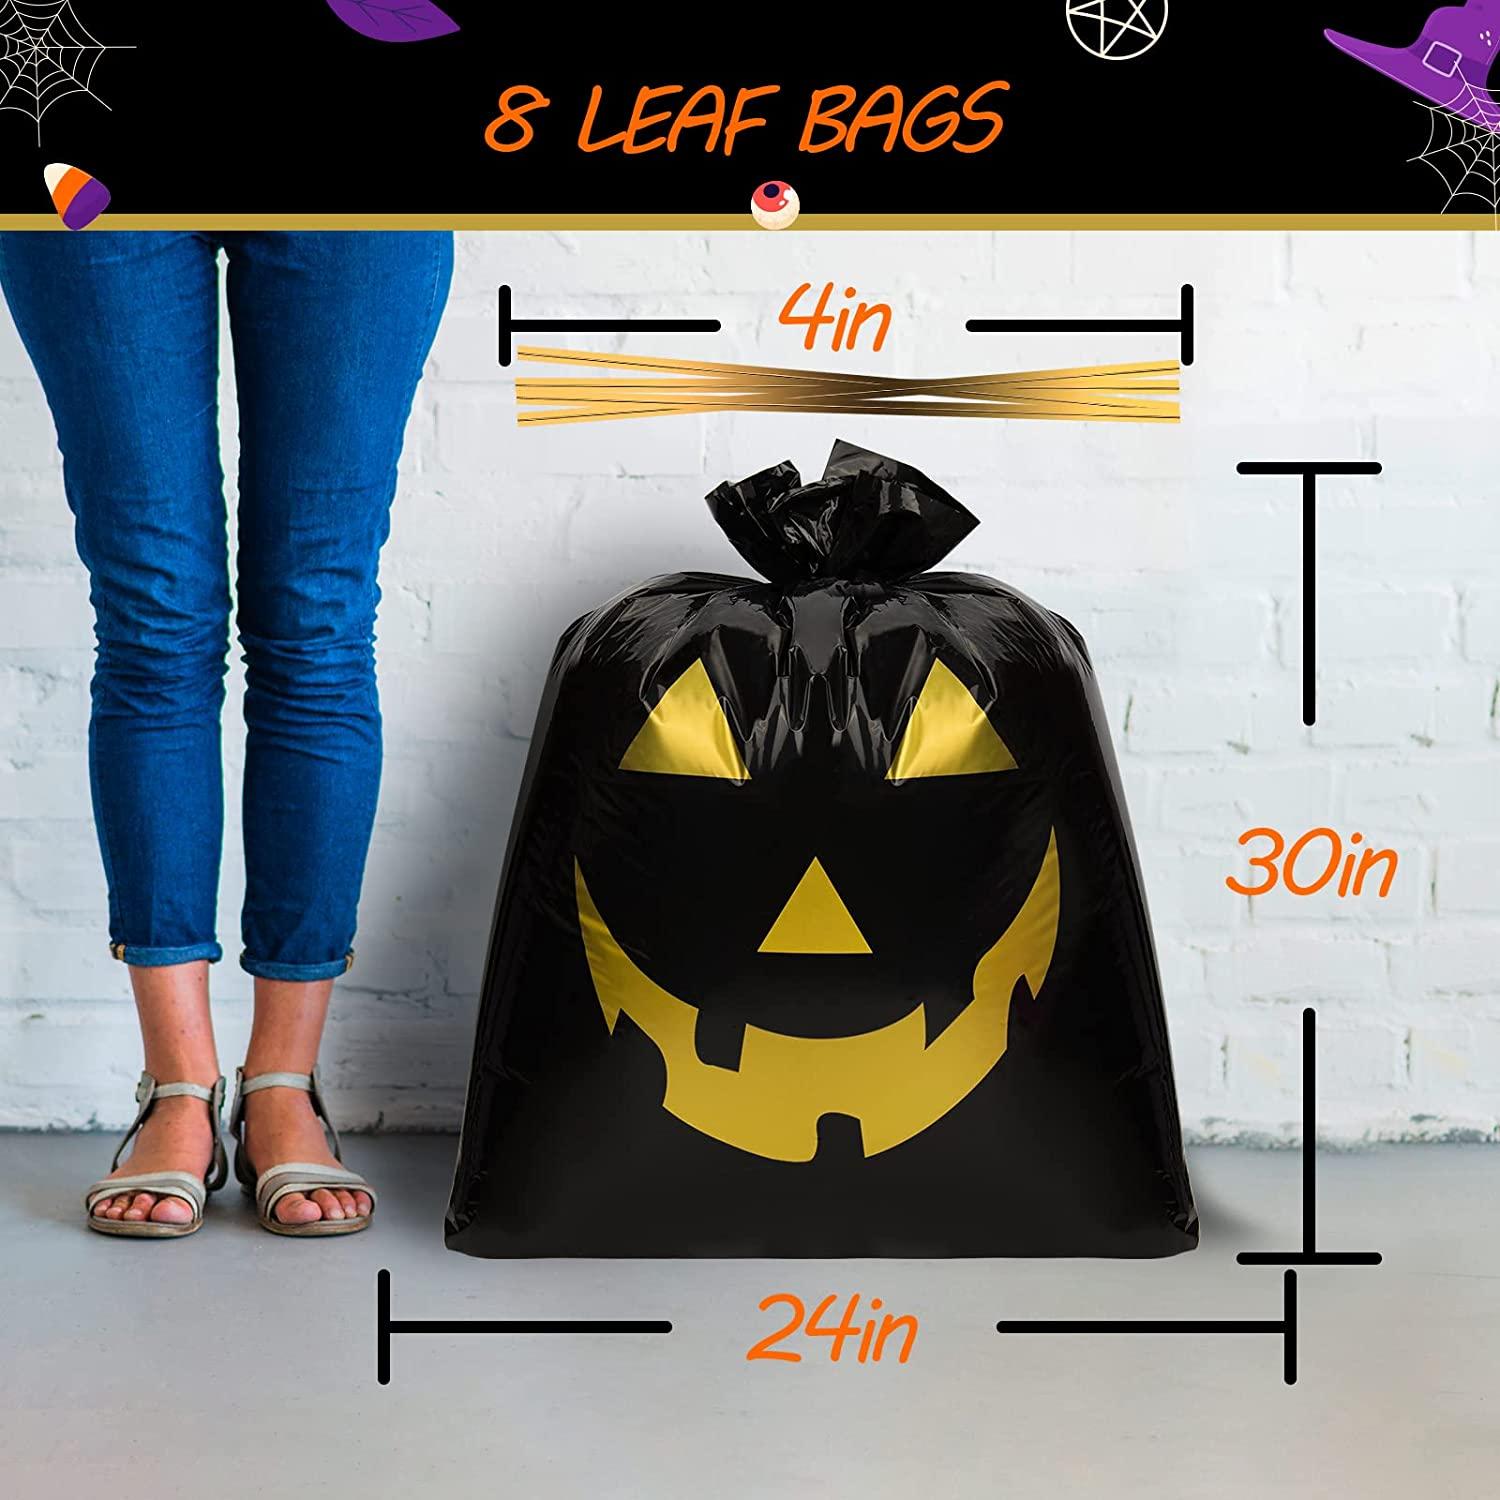 Lawn & Leaf Black Bags